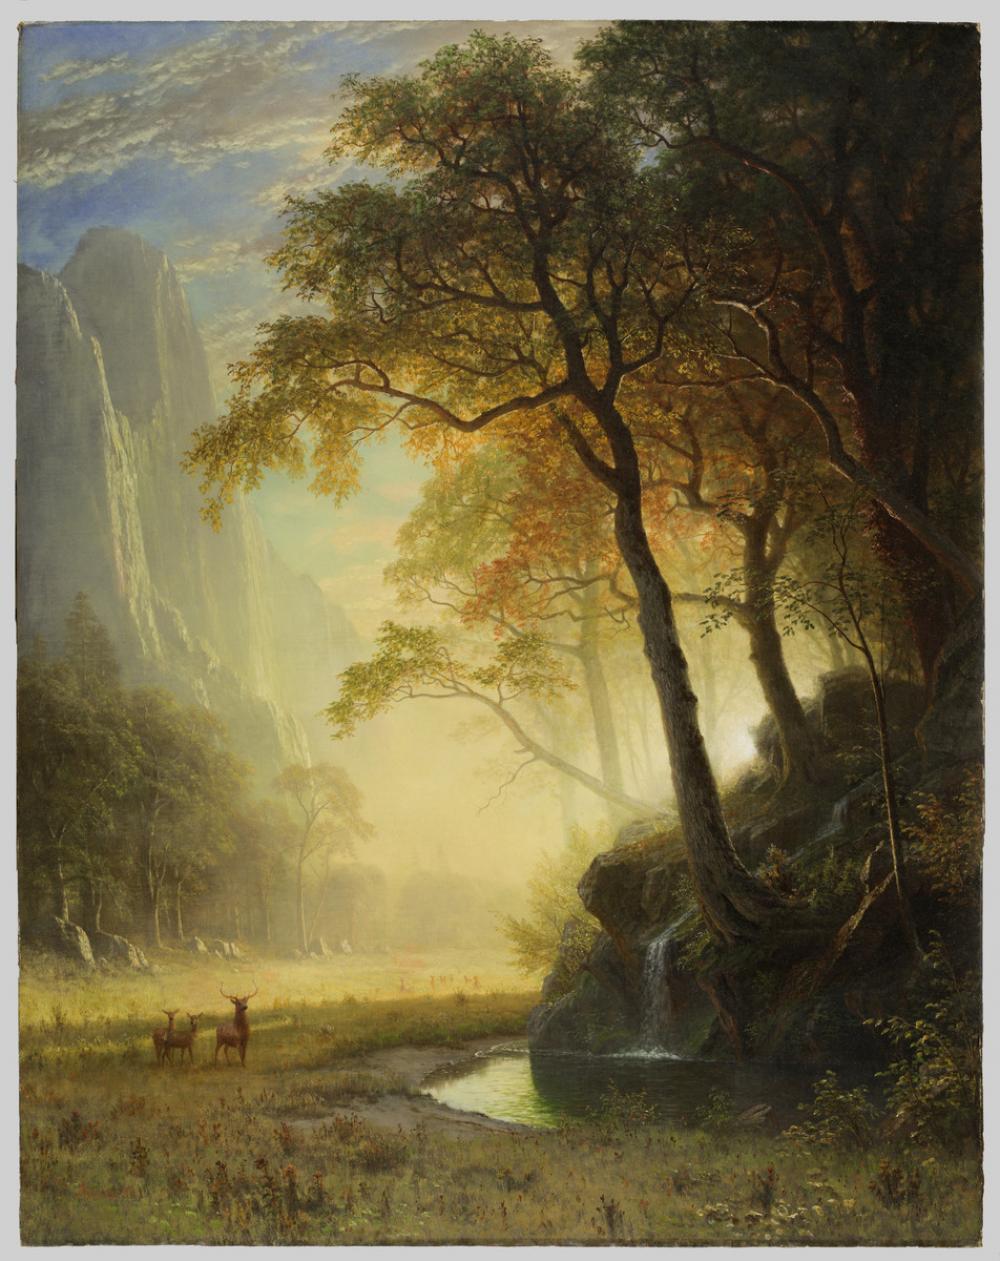 Albert Bierstadt (American, born Germany, 1830-1902), Hetch Hetchy Canyon, 1875